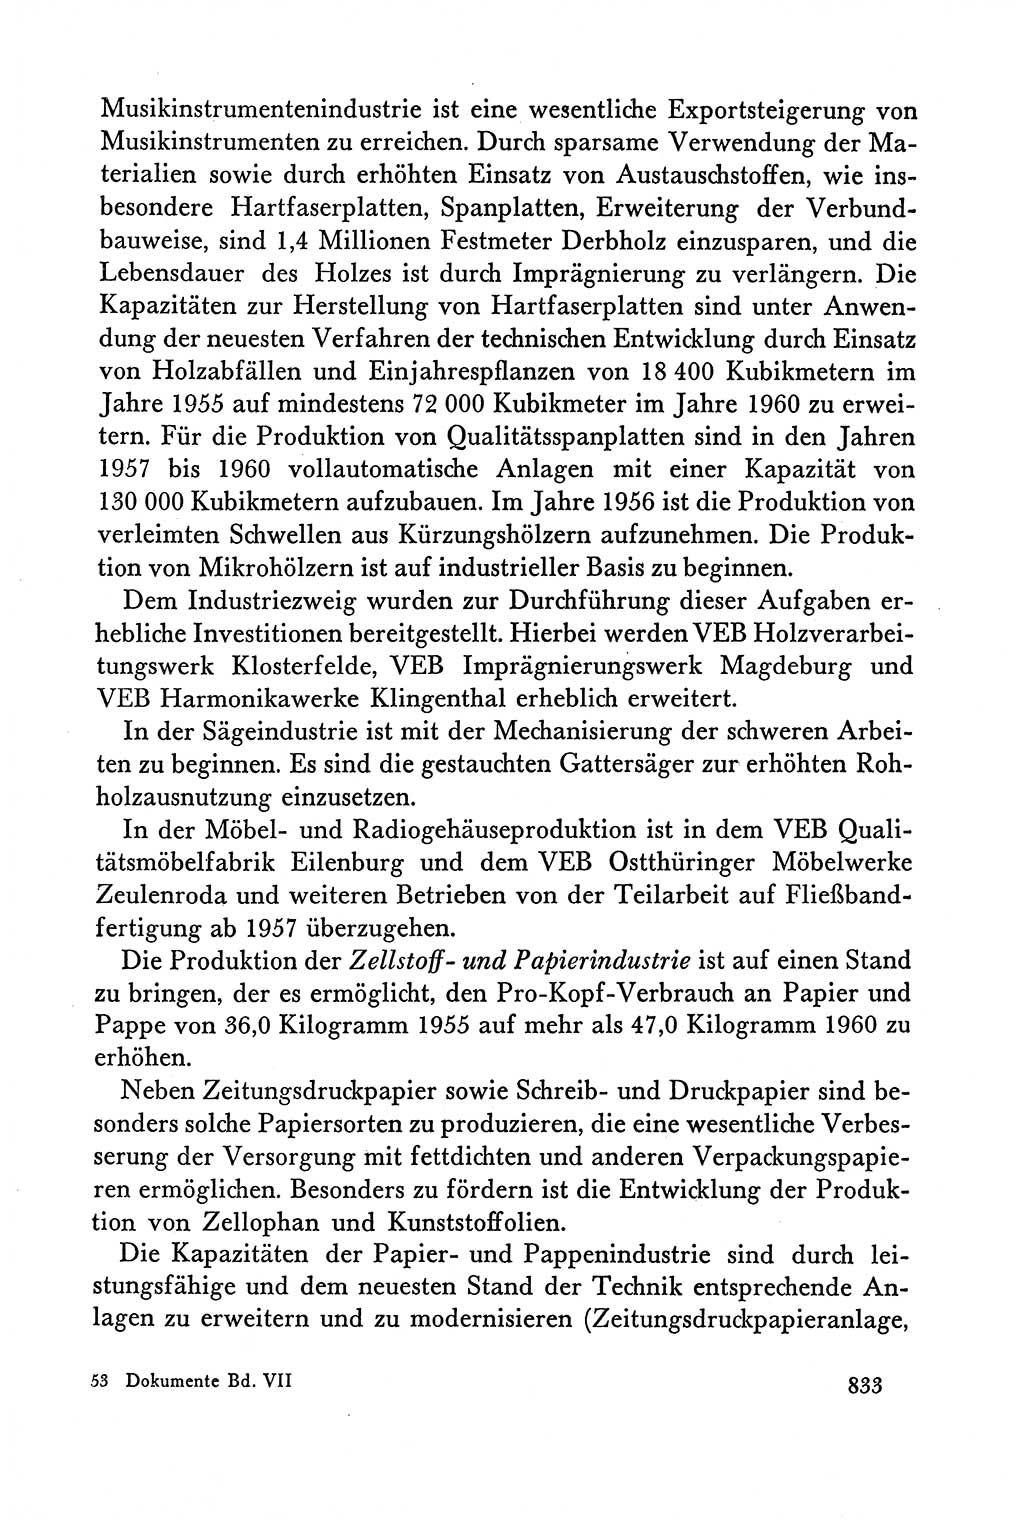 Dokumente der Sozialistischen Einheitspartei Deutschlands (SED) [Deutsche Demokratische Republik (DDR)] 1958-1959, Seite 833 (Dok. SED DDR 1958-1959, S. 833)